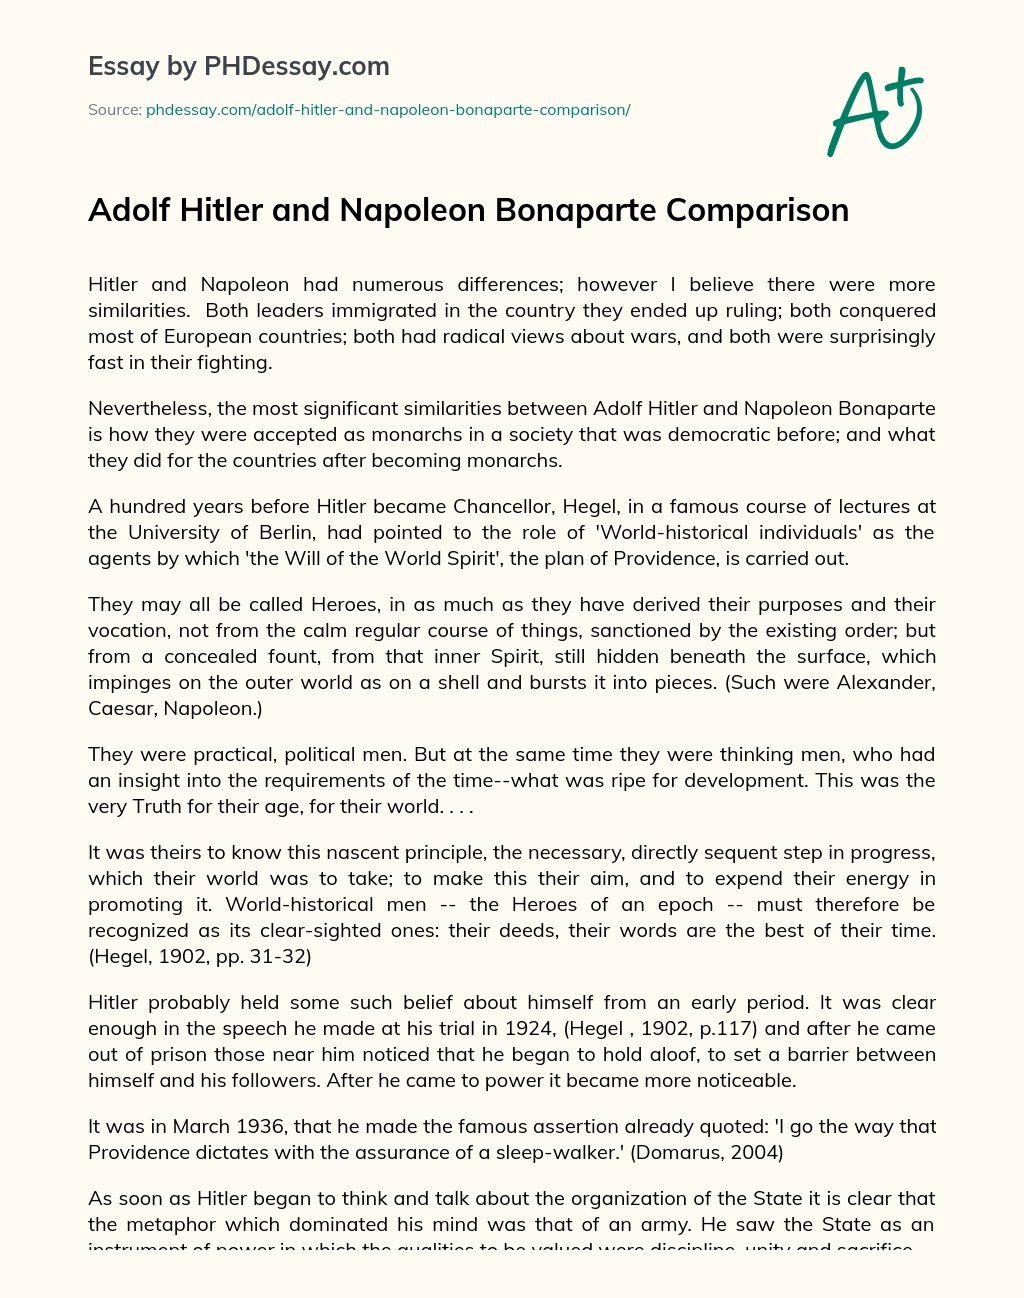 Adolf Hitler and Napoleon Bonaparte Comparison essay